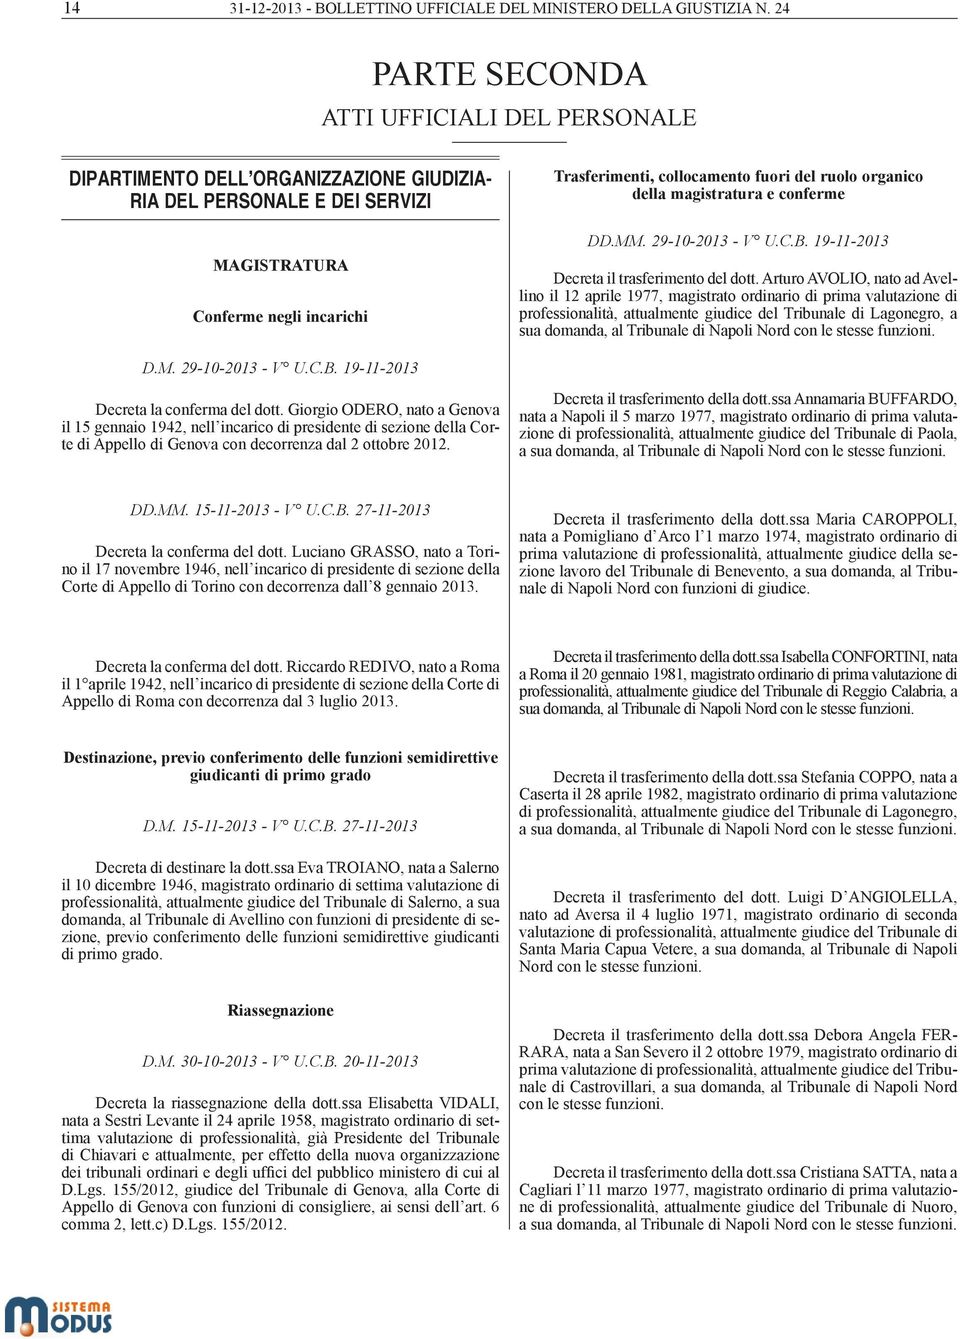 ruolo organico della magistratura e conferme DD.MM. 29-10-2013 - V U.C.B. 19-11-2013 Decreta il trasferimento del dott.